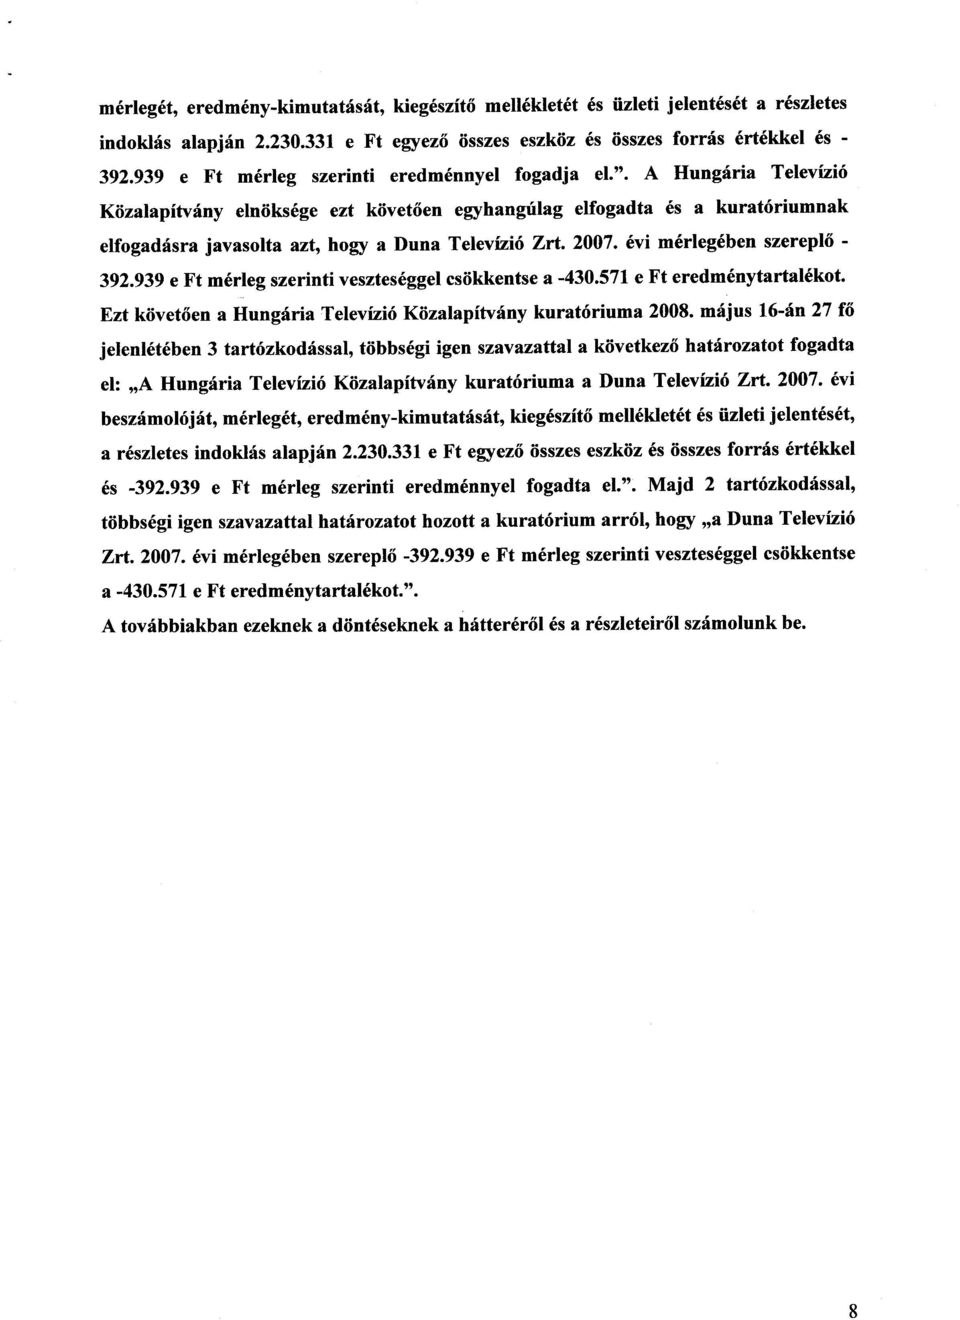 A Hungária Televízi ó Közalapítvány elnöksége ezt követően egyhangúlag elfogadta és a kuratóriumnak elfogadásra javasolta azt, hogy a Duna Televízió Zrt. 2007. évi mérlegében szereplő - 392.